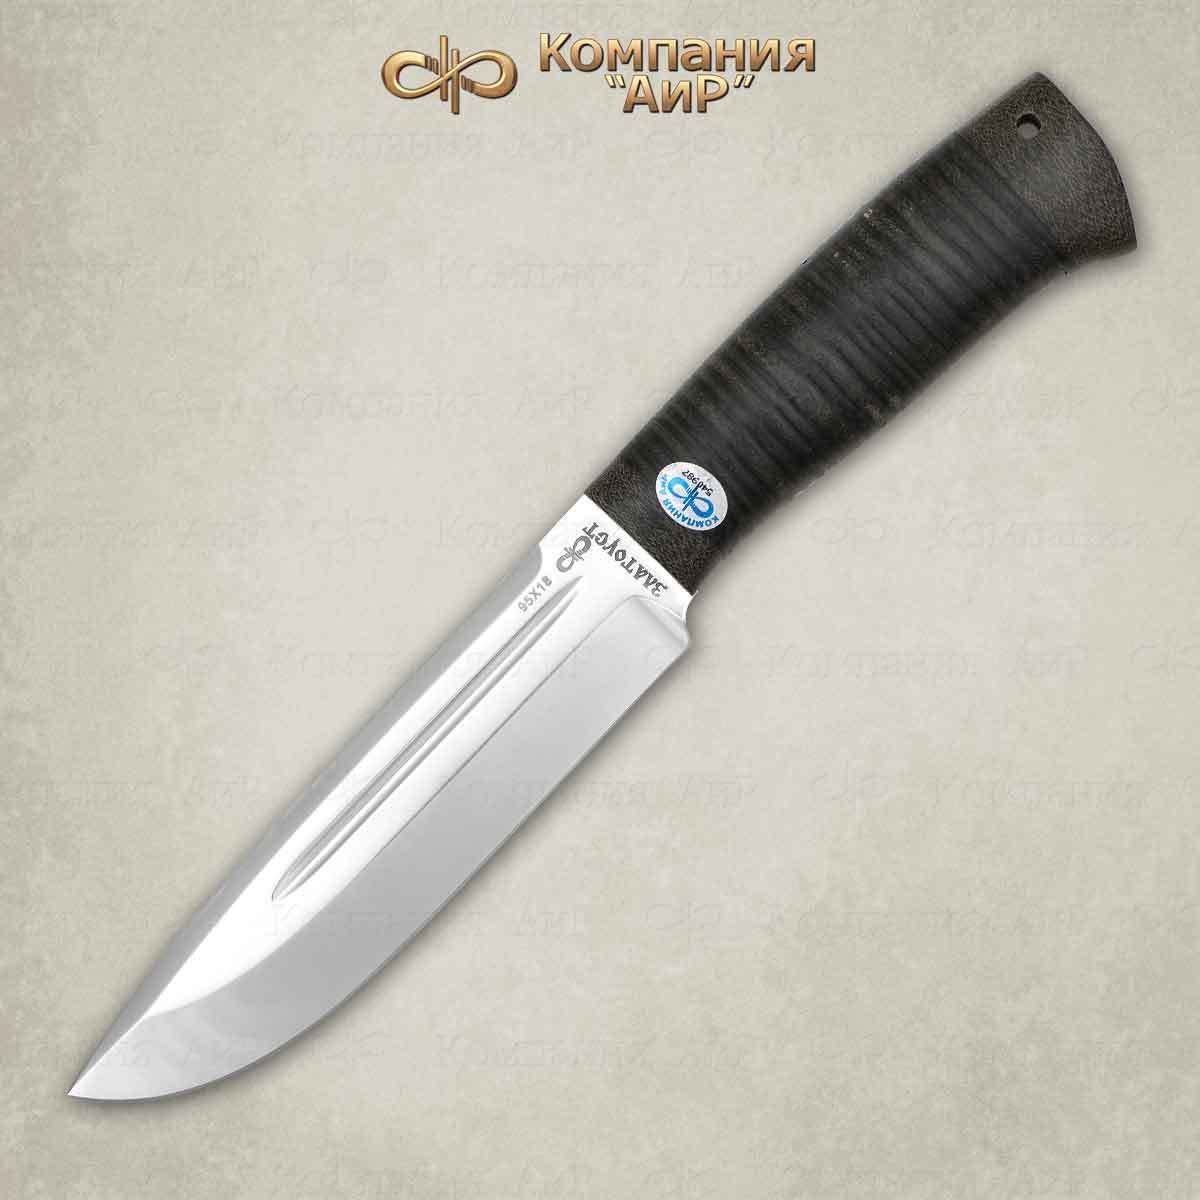 Нож разделочный "Селигер" кожа, АиР от Ножиков